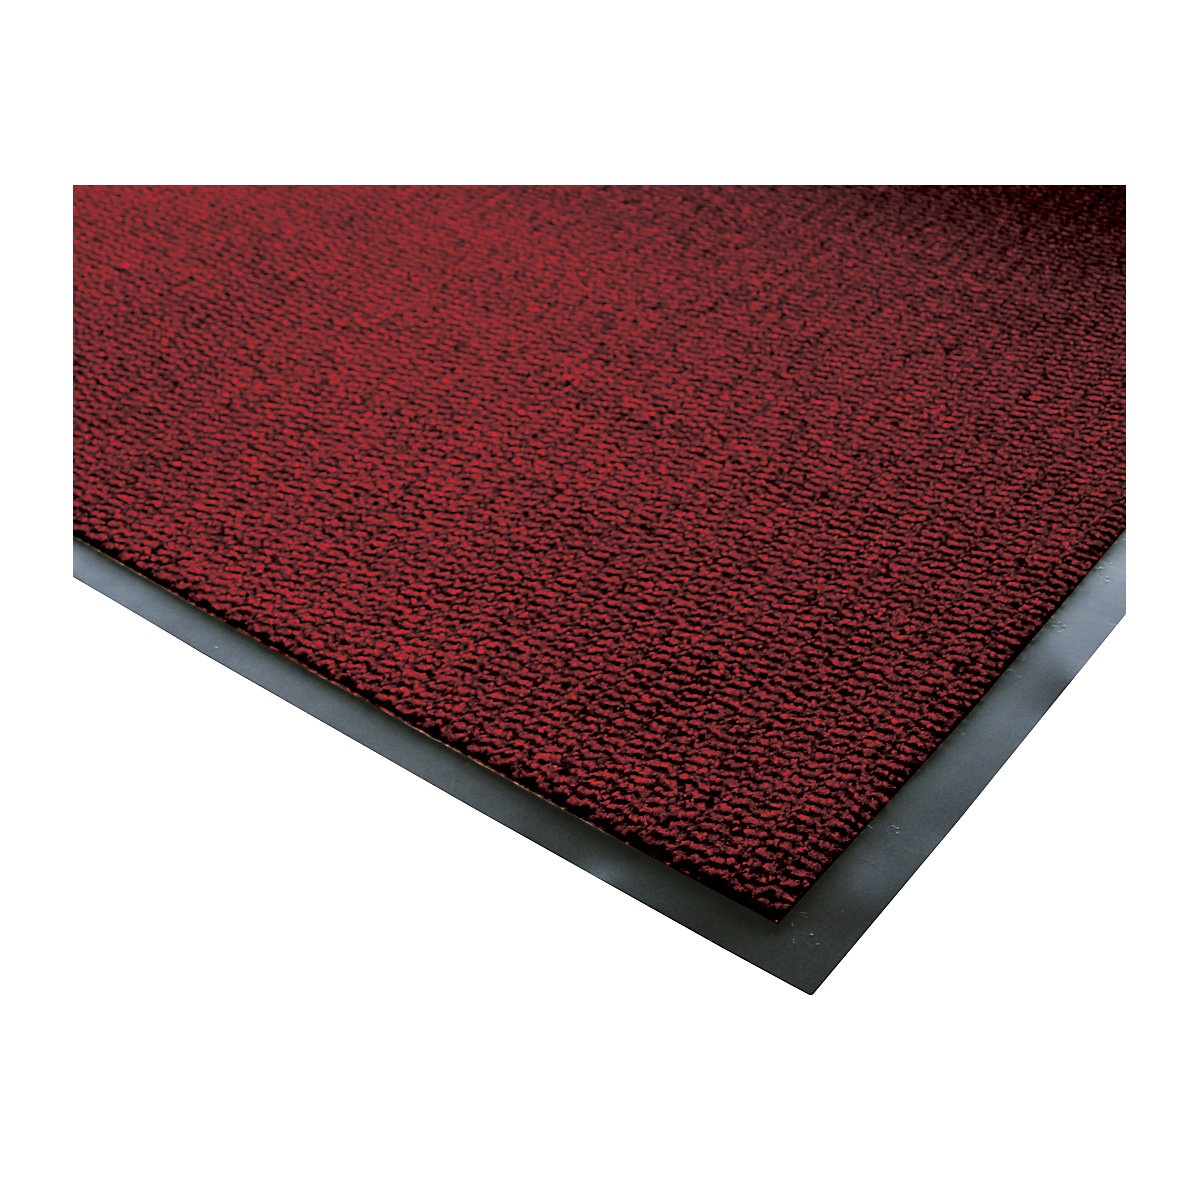 Covoraș de interior pentru reținerea impurităților, fibre din polipropilenă, lățime 900 mm, per m.l., negru / roșu